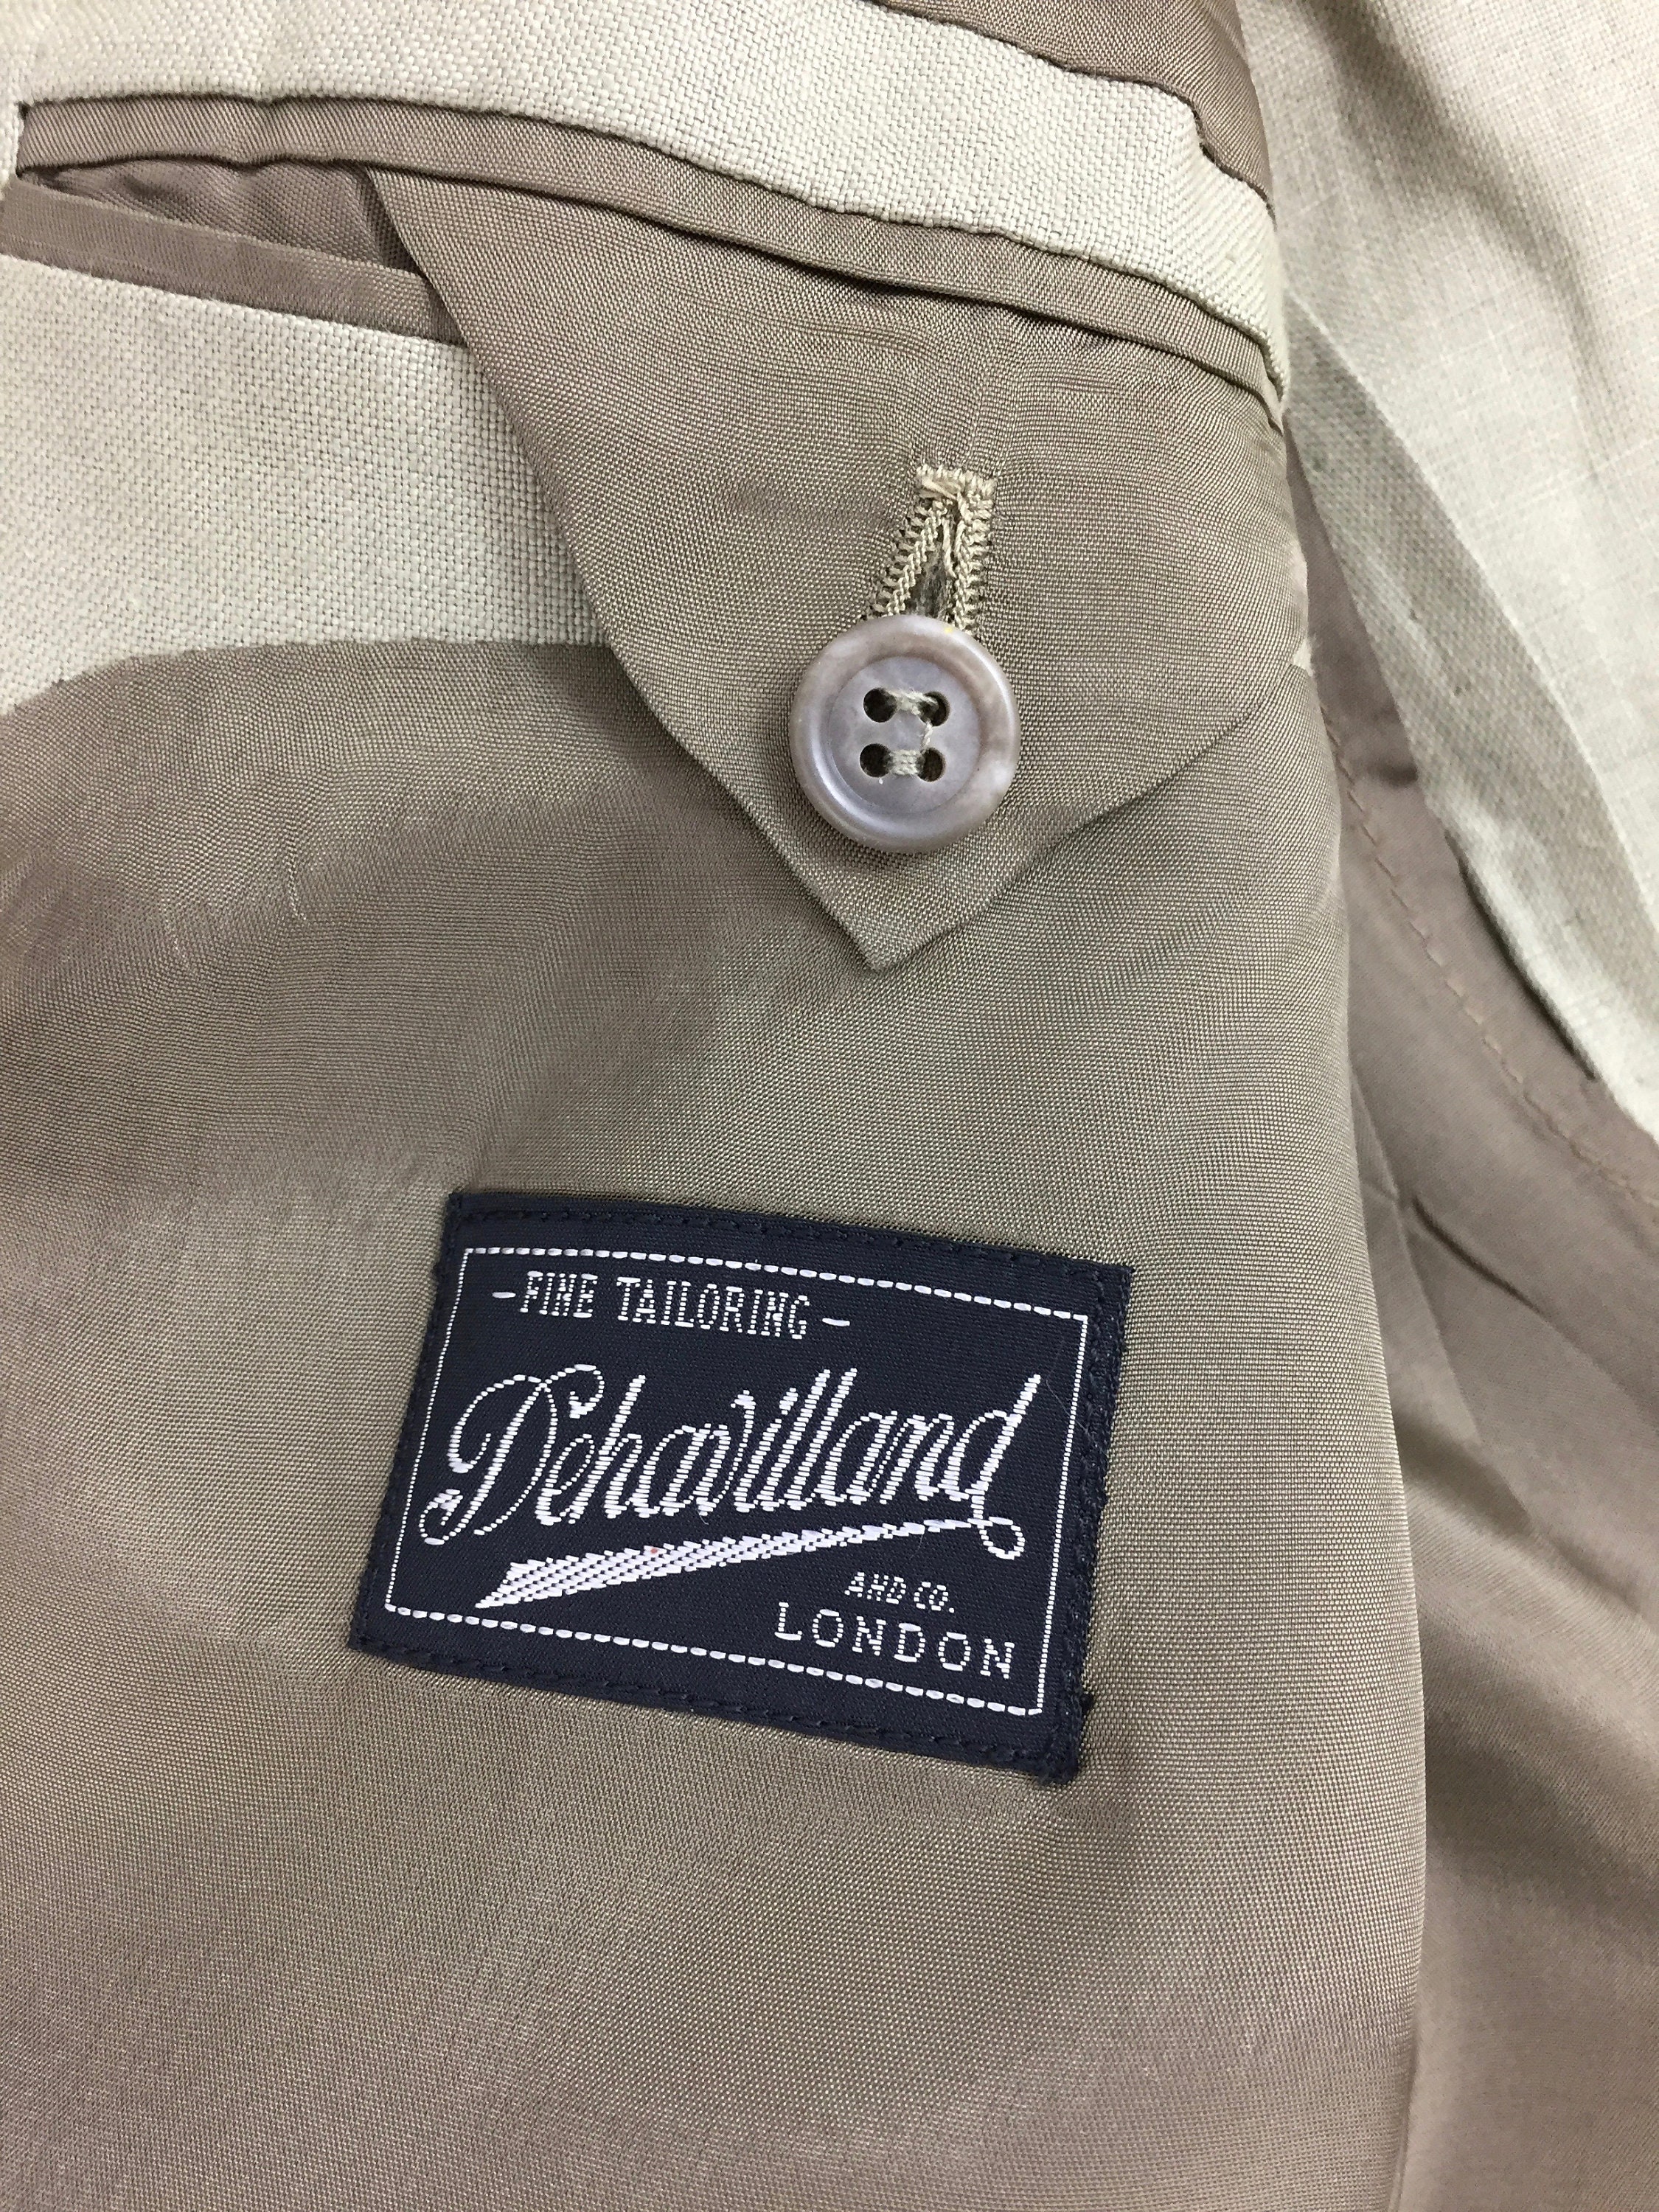 Original 1980s Men's Linen Jacket by 'Dehavilland' | Etsy